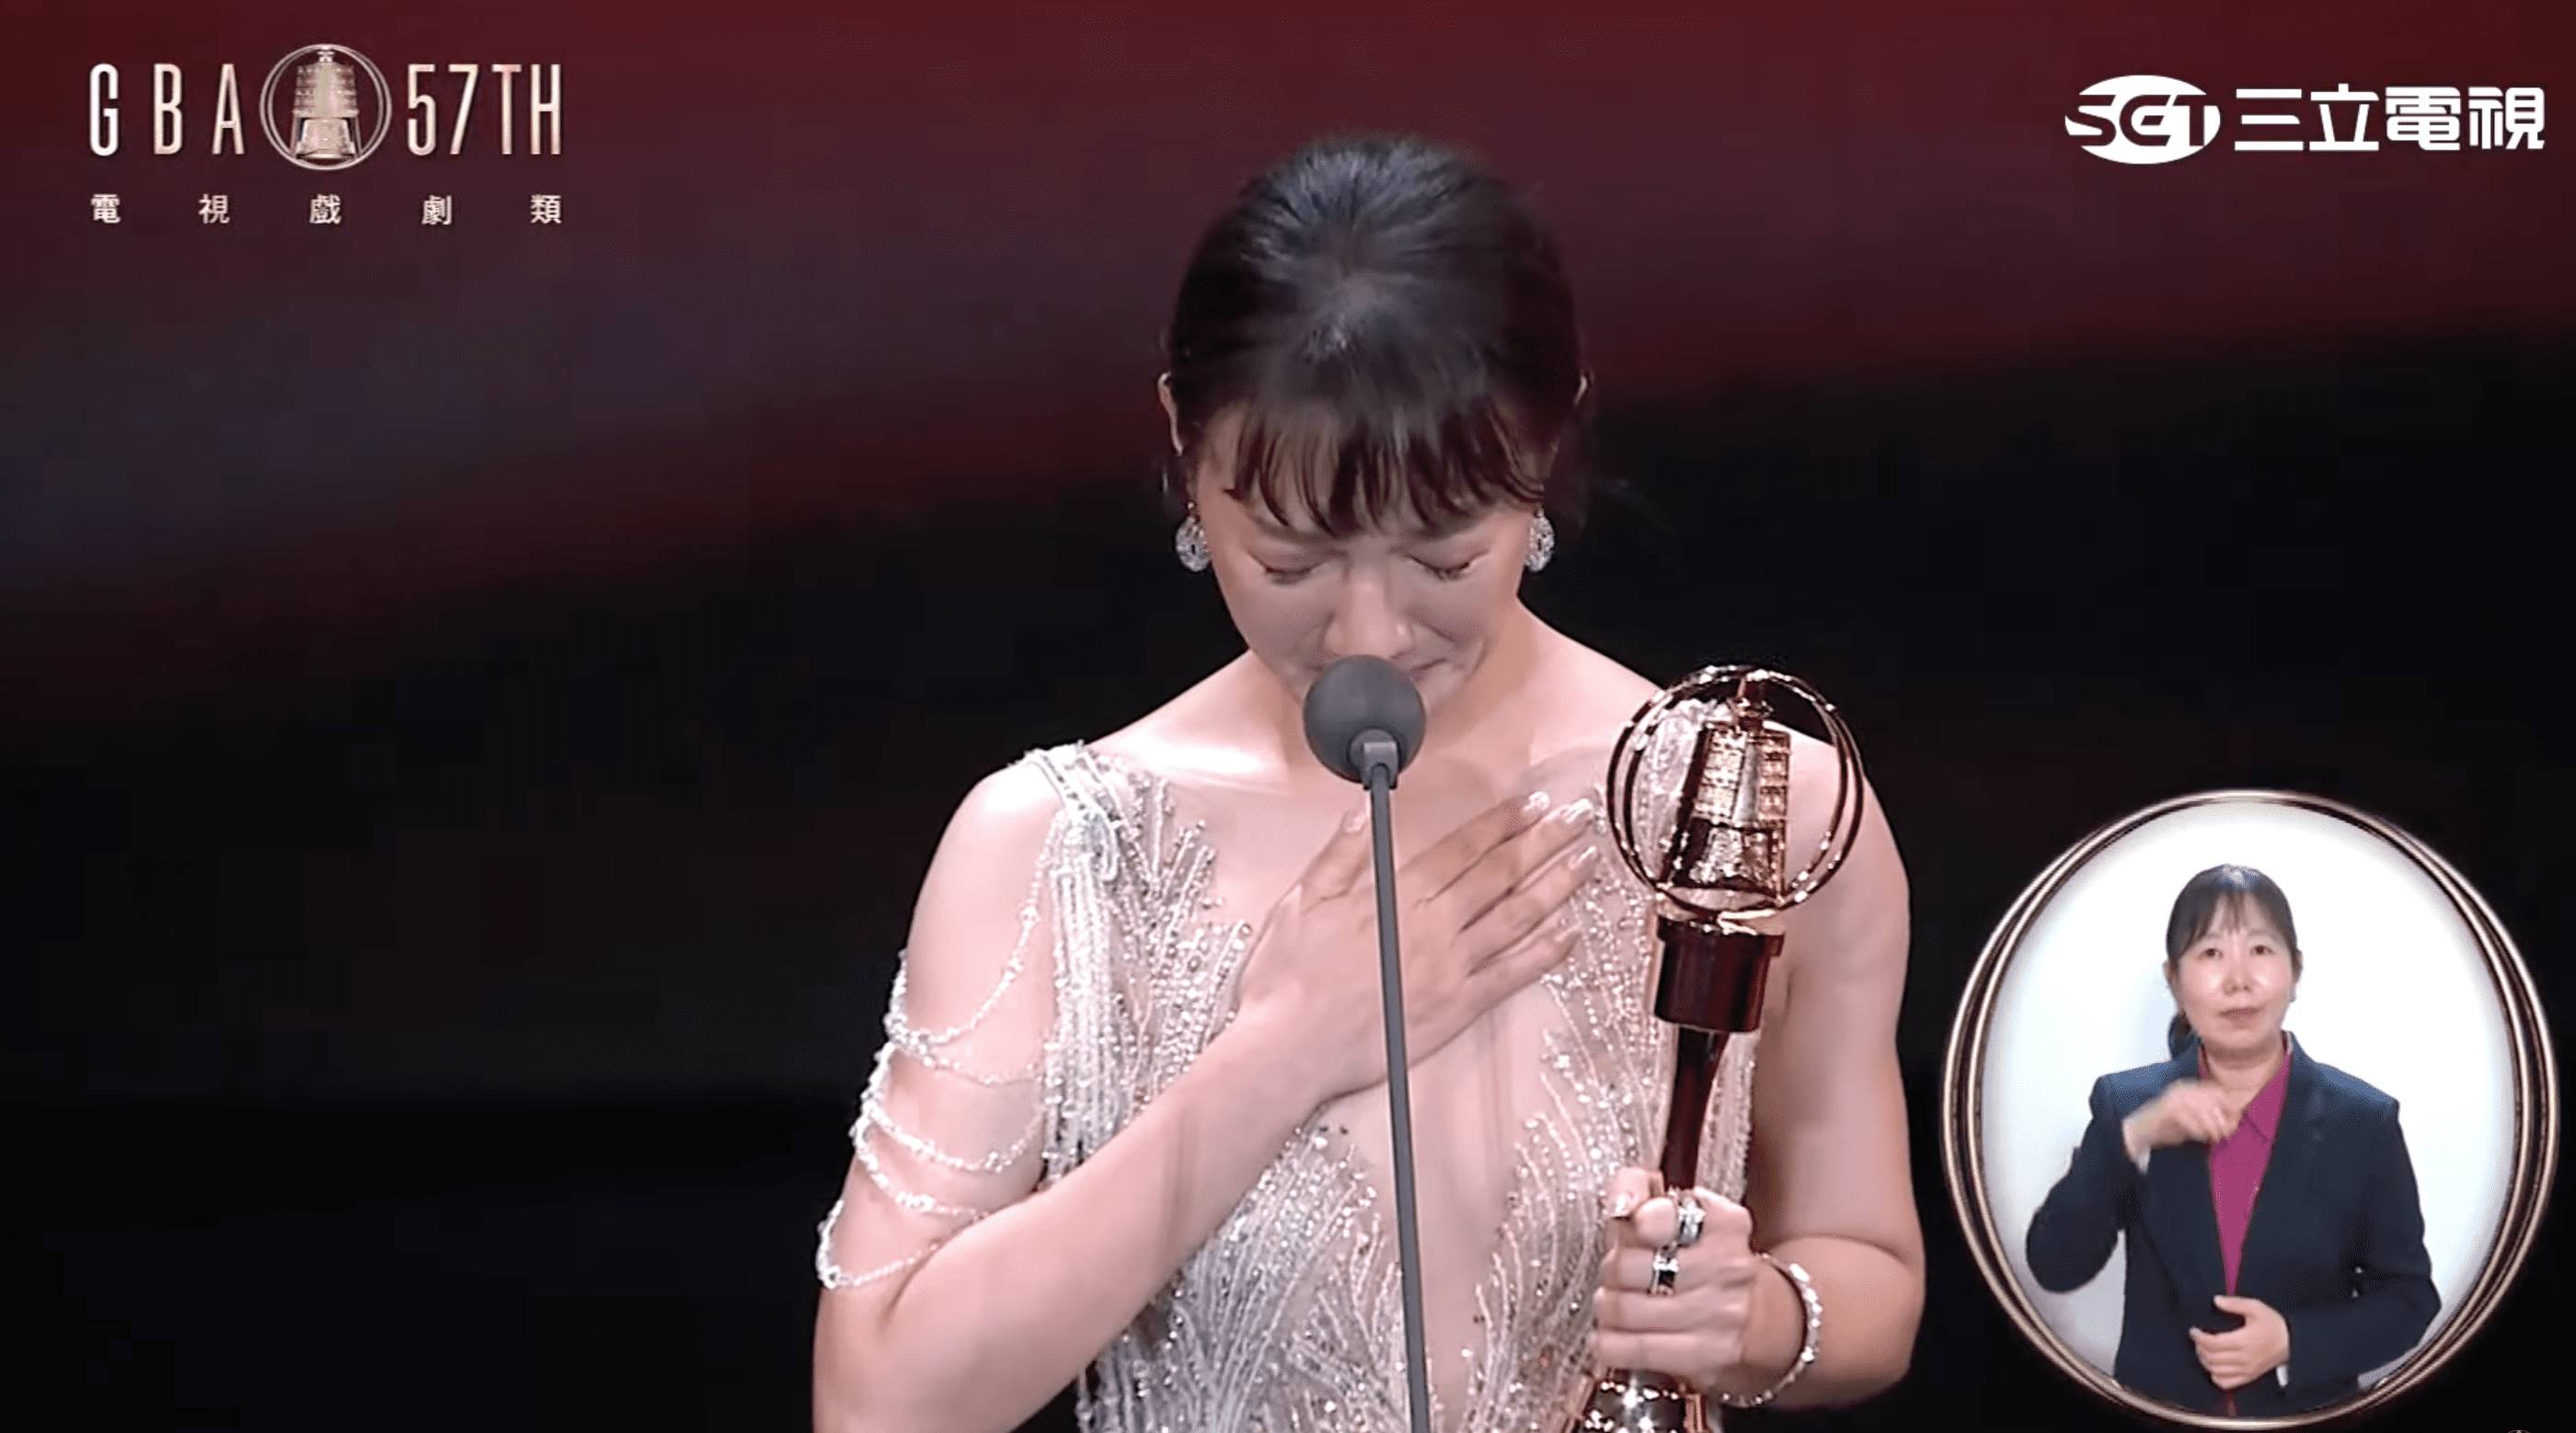 李杏獲得第57屆金鐘獎戲劇節目女配角獎